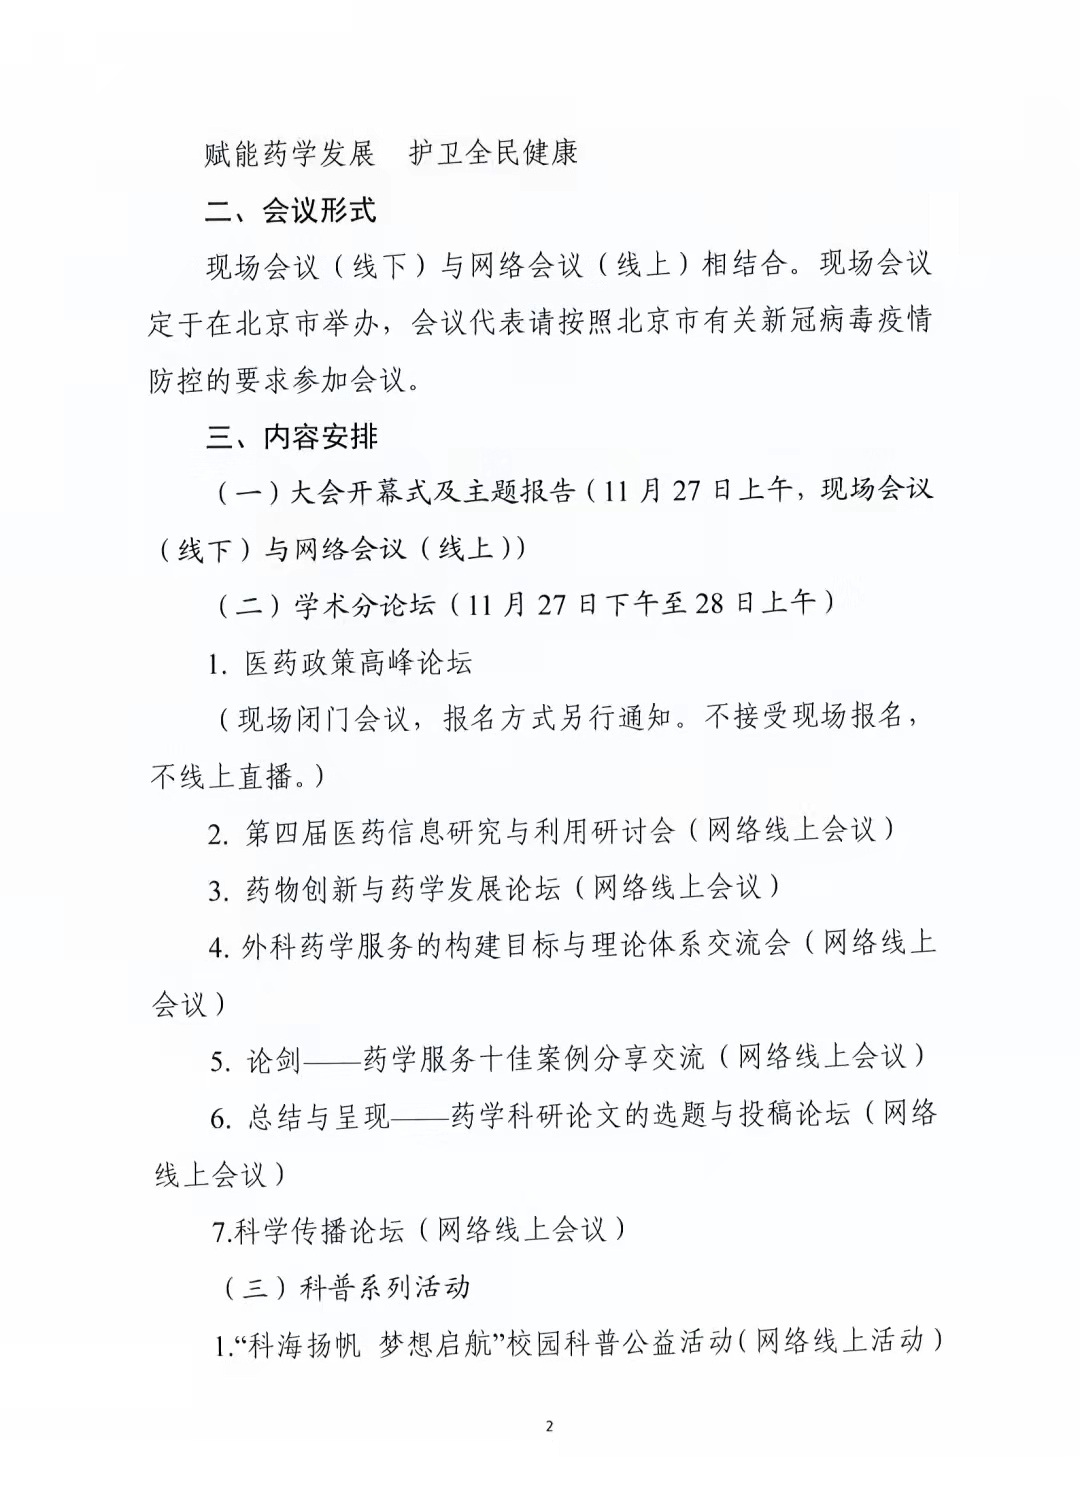 关于举办中国药学会第二十一届中国药师周的通知（第二轮）(图2)